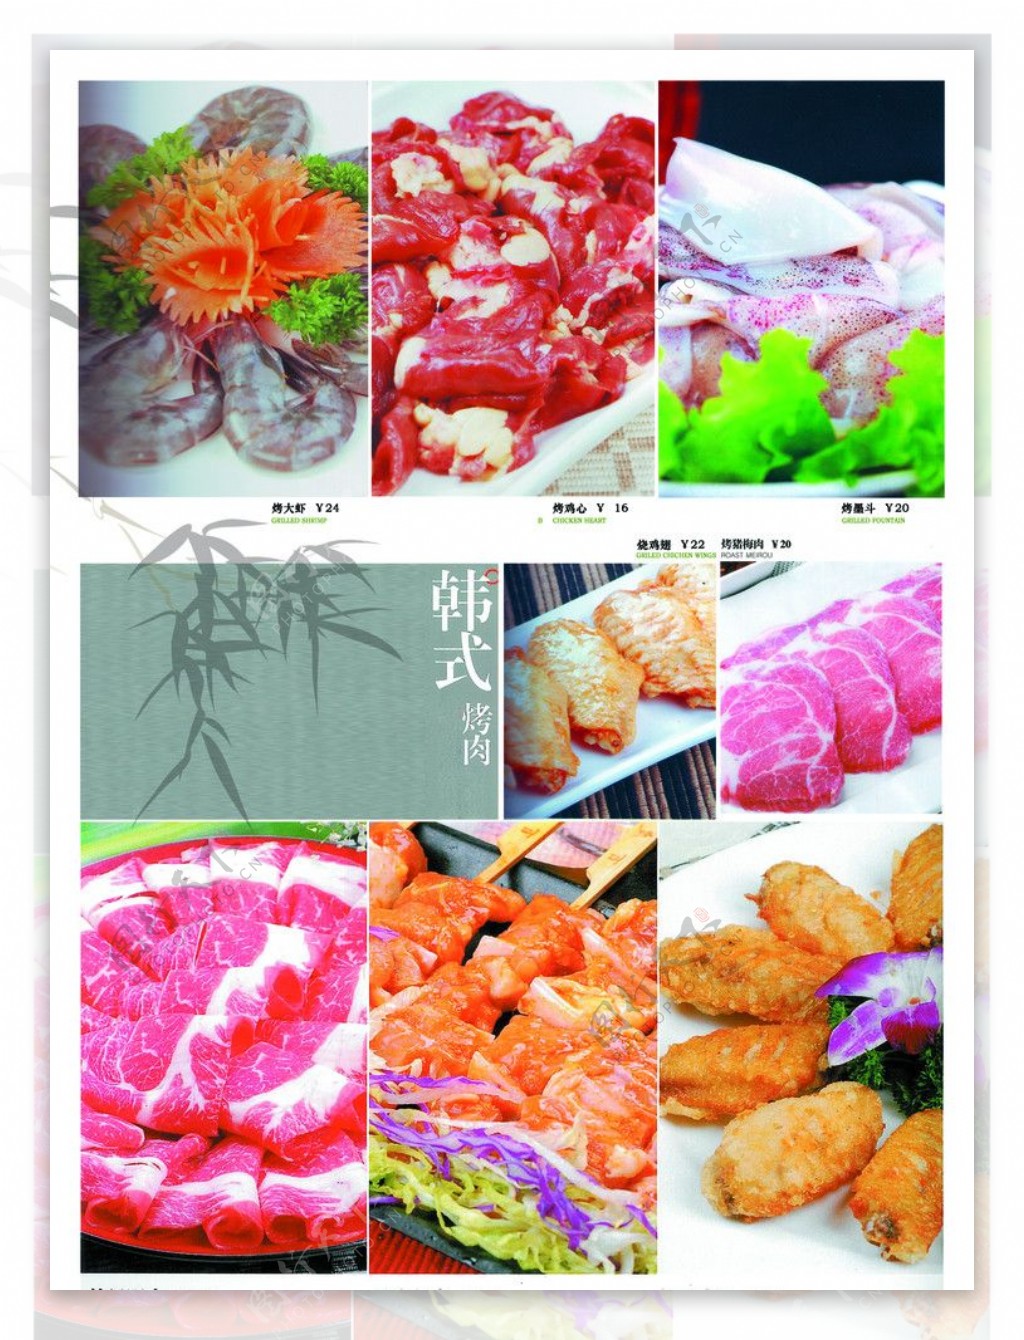 韩式烤肉菜谱图片